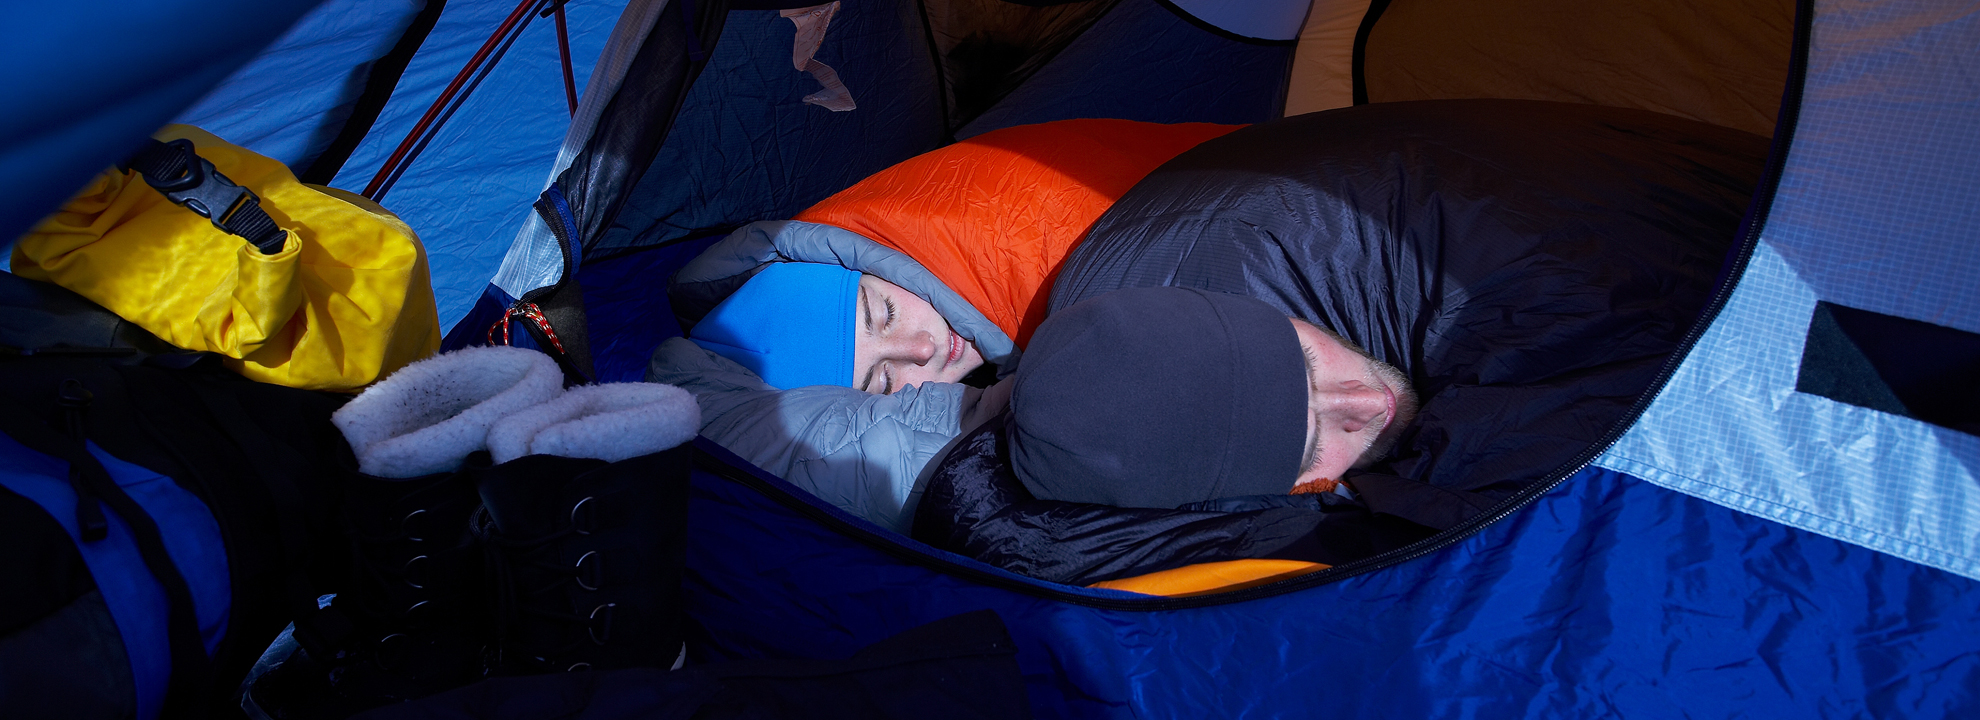 Cinco tipos saco de dormir impermeable camping senderismo exterior adecuadamente reforzado 